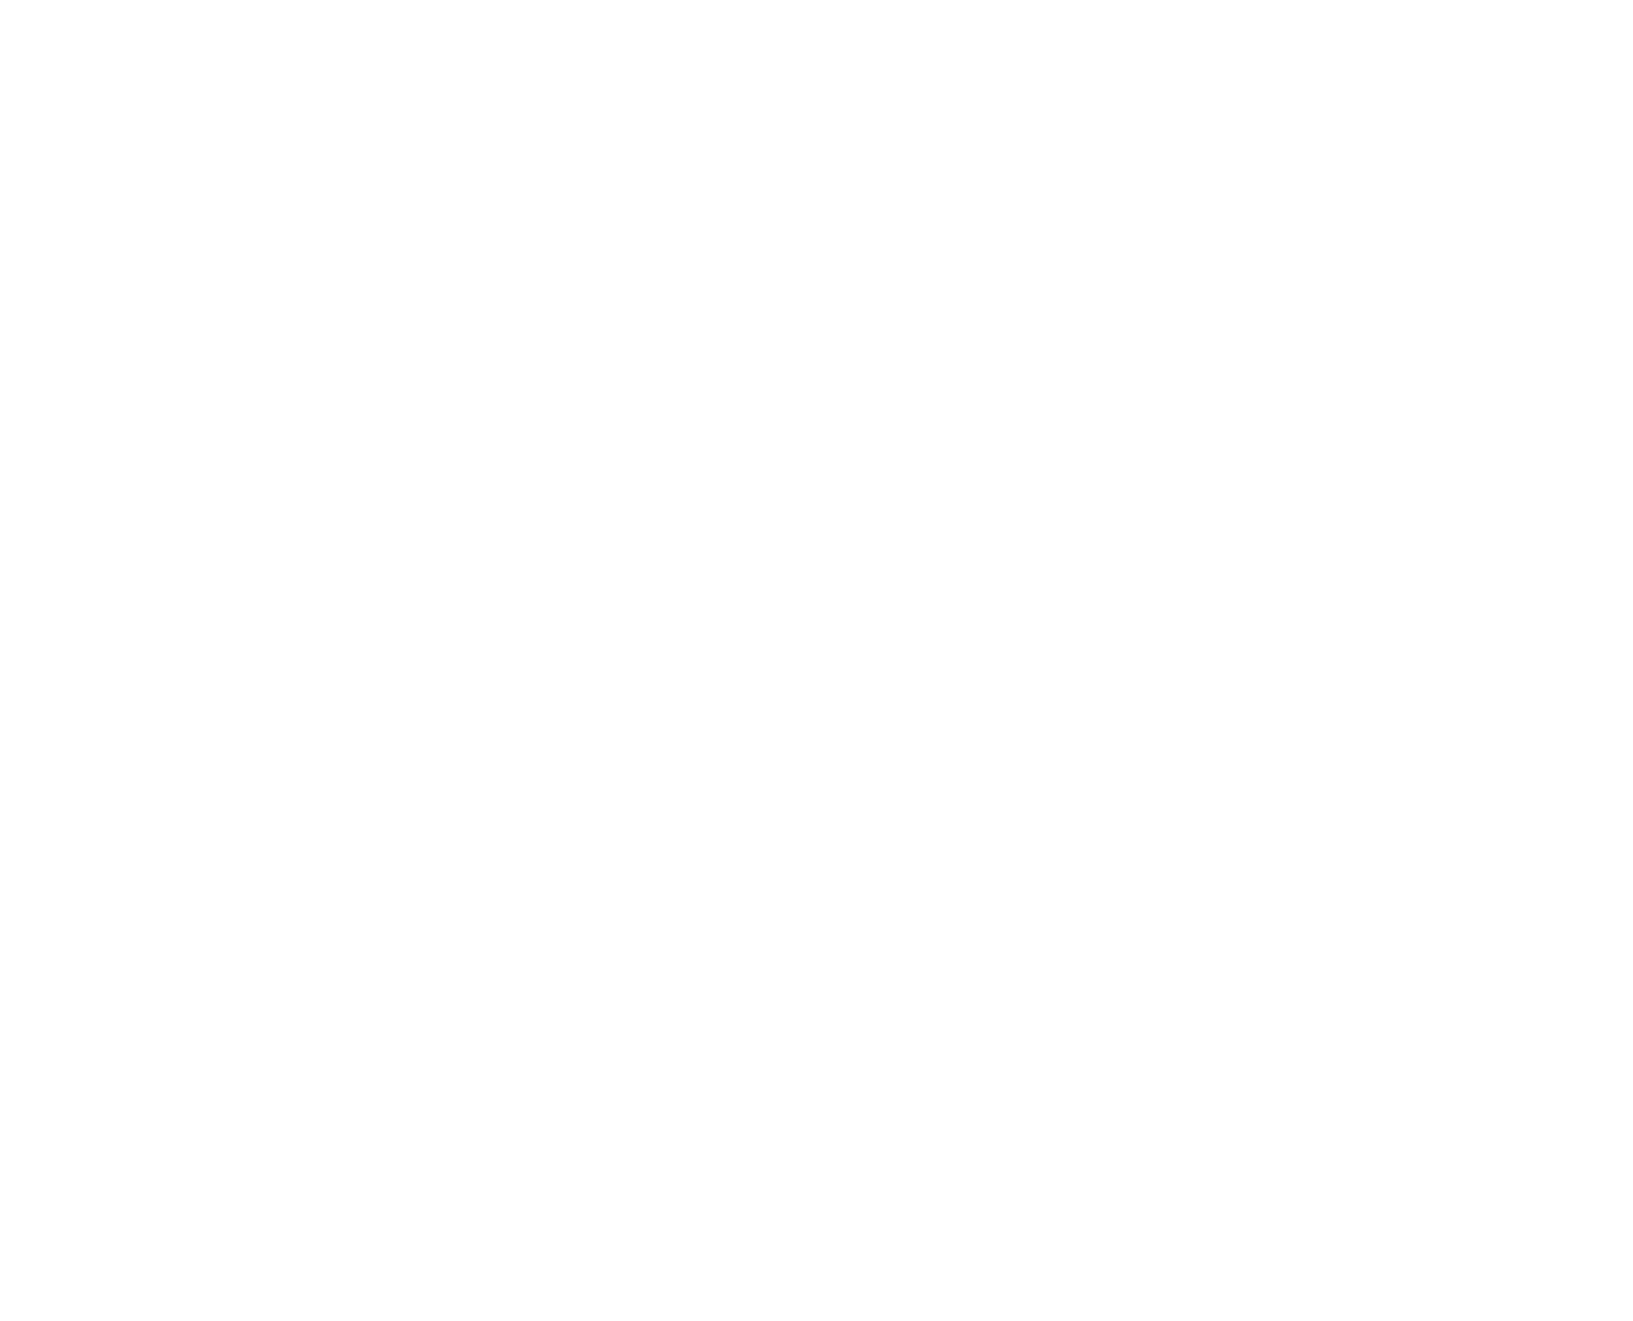 4i Solutions Ltd